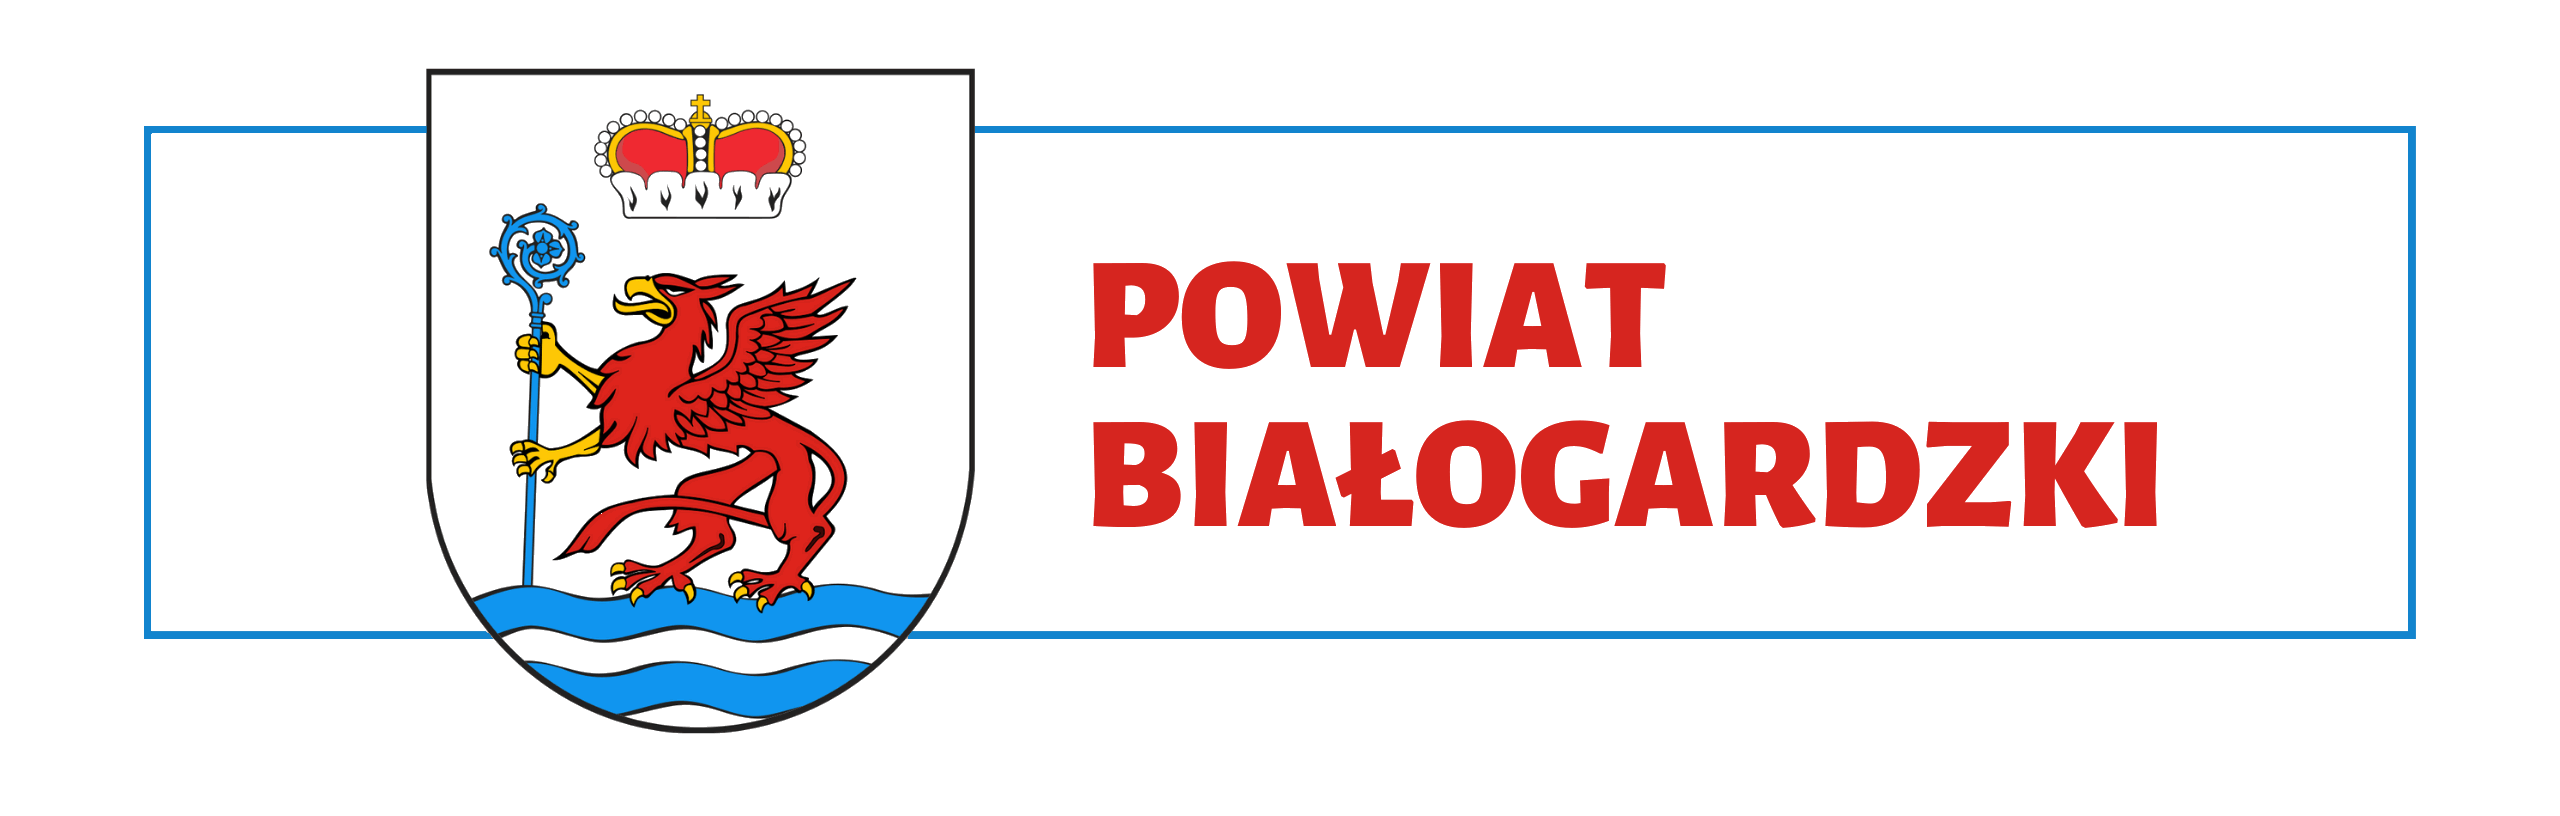 Powiat Białogardzki